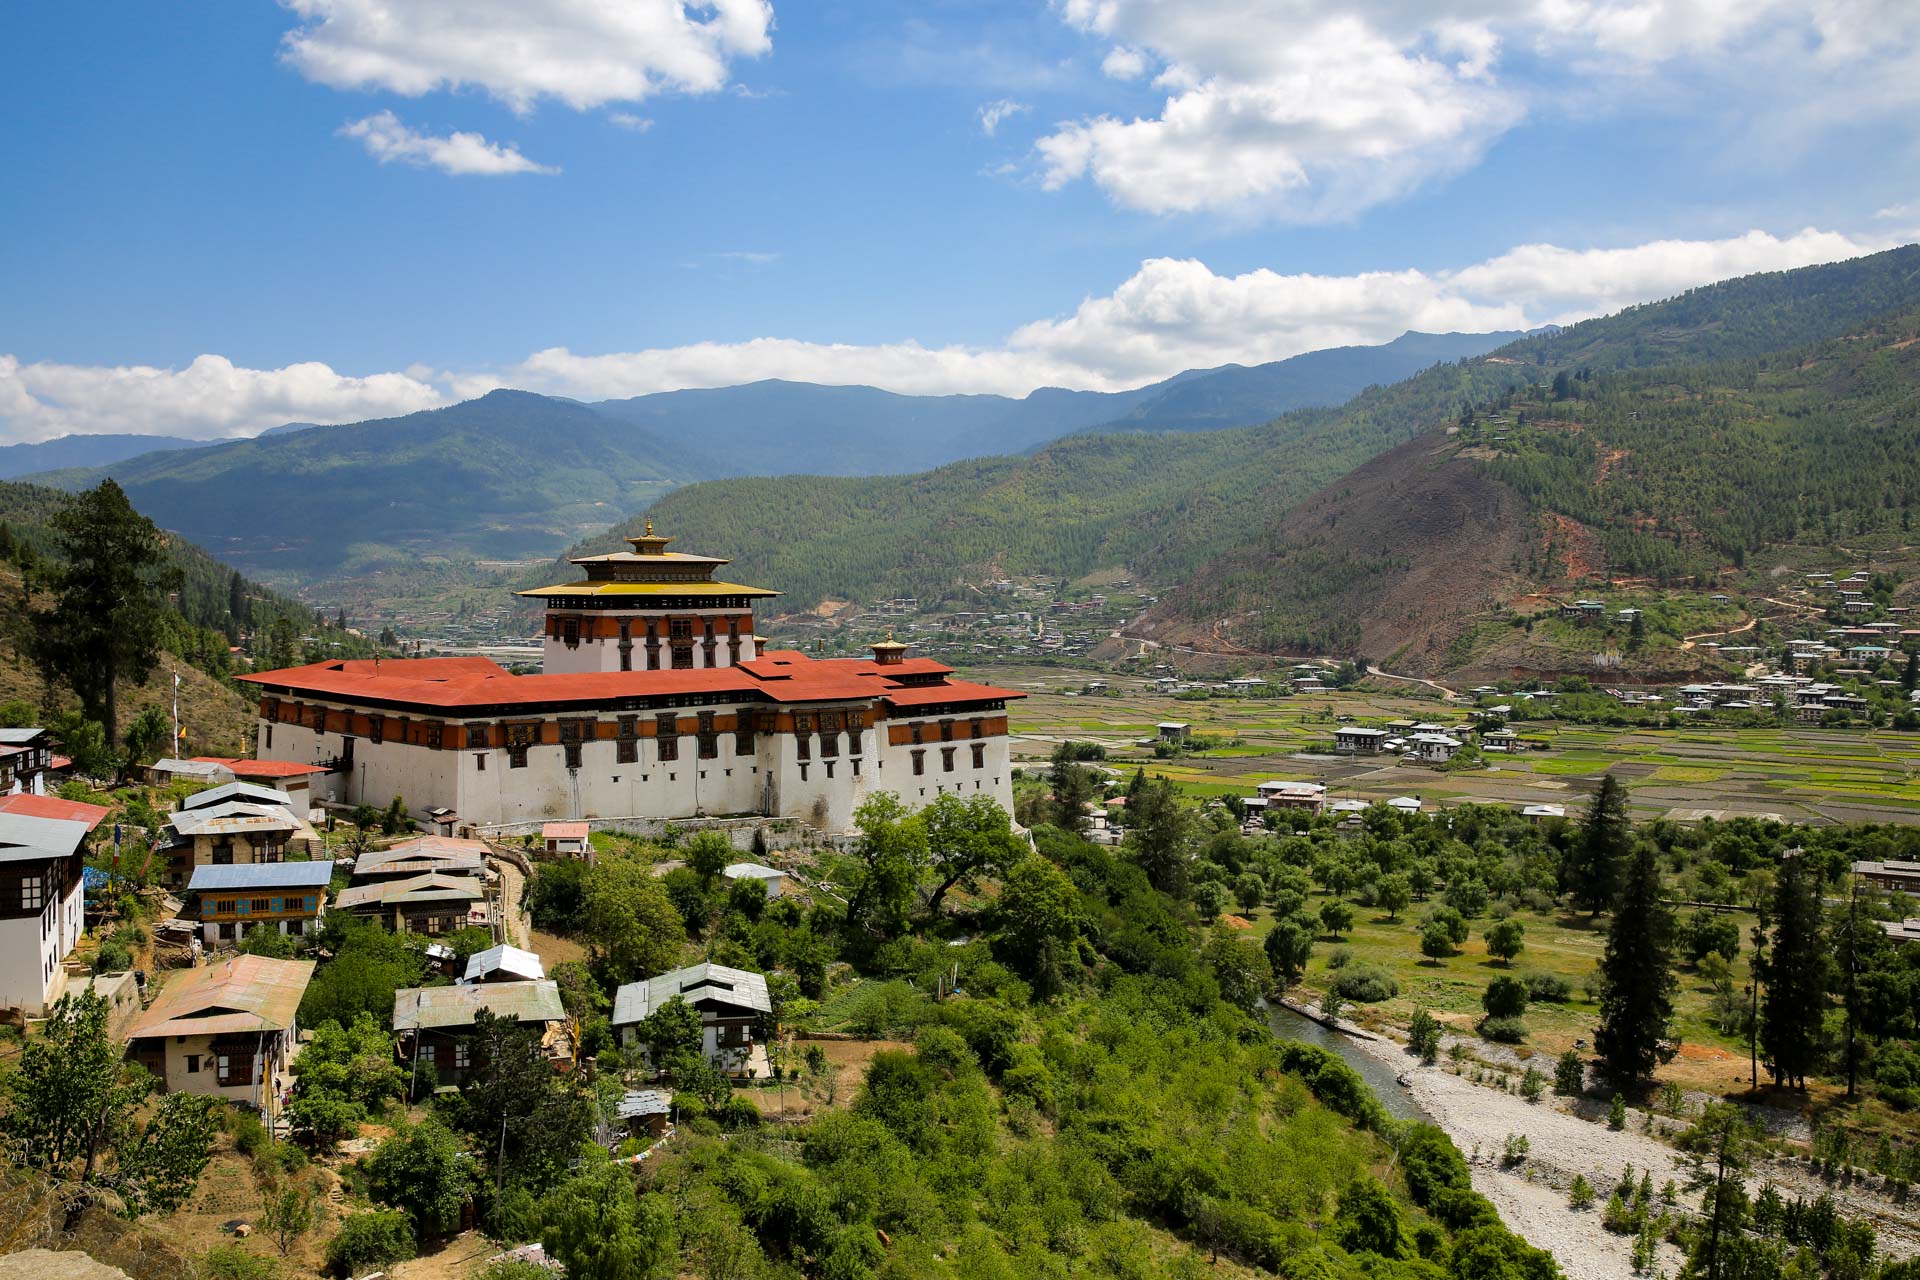 ツアー・一人旅どちらも楽しめるブータンの旅～西ブータン3都市を訪れる6日間 - ブータン旅行ならGNH